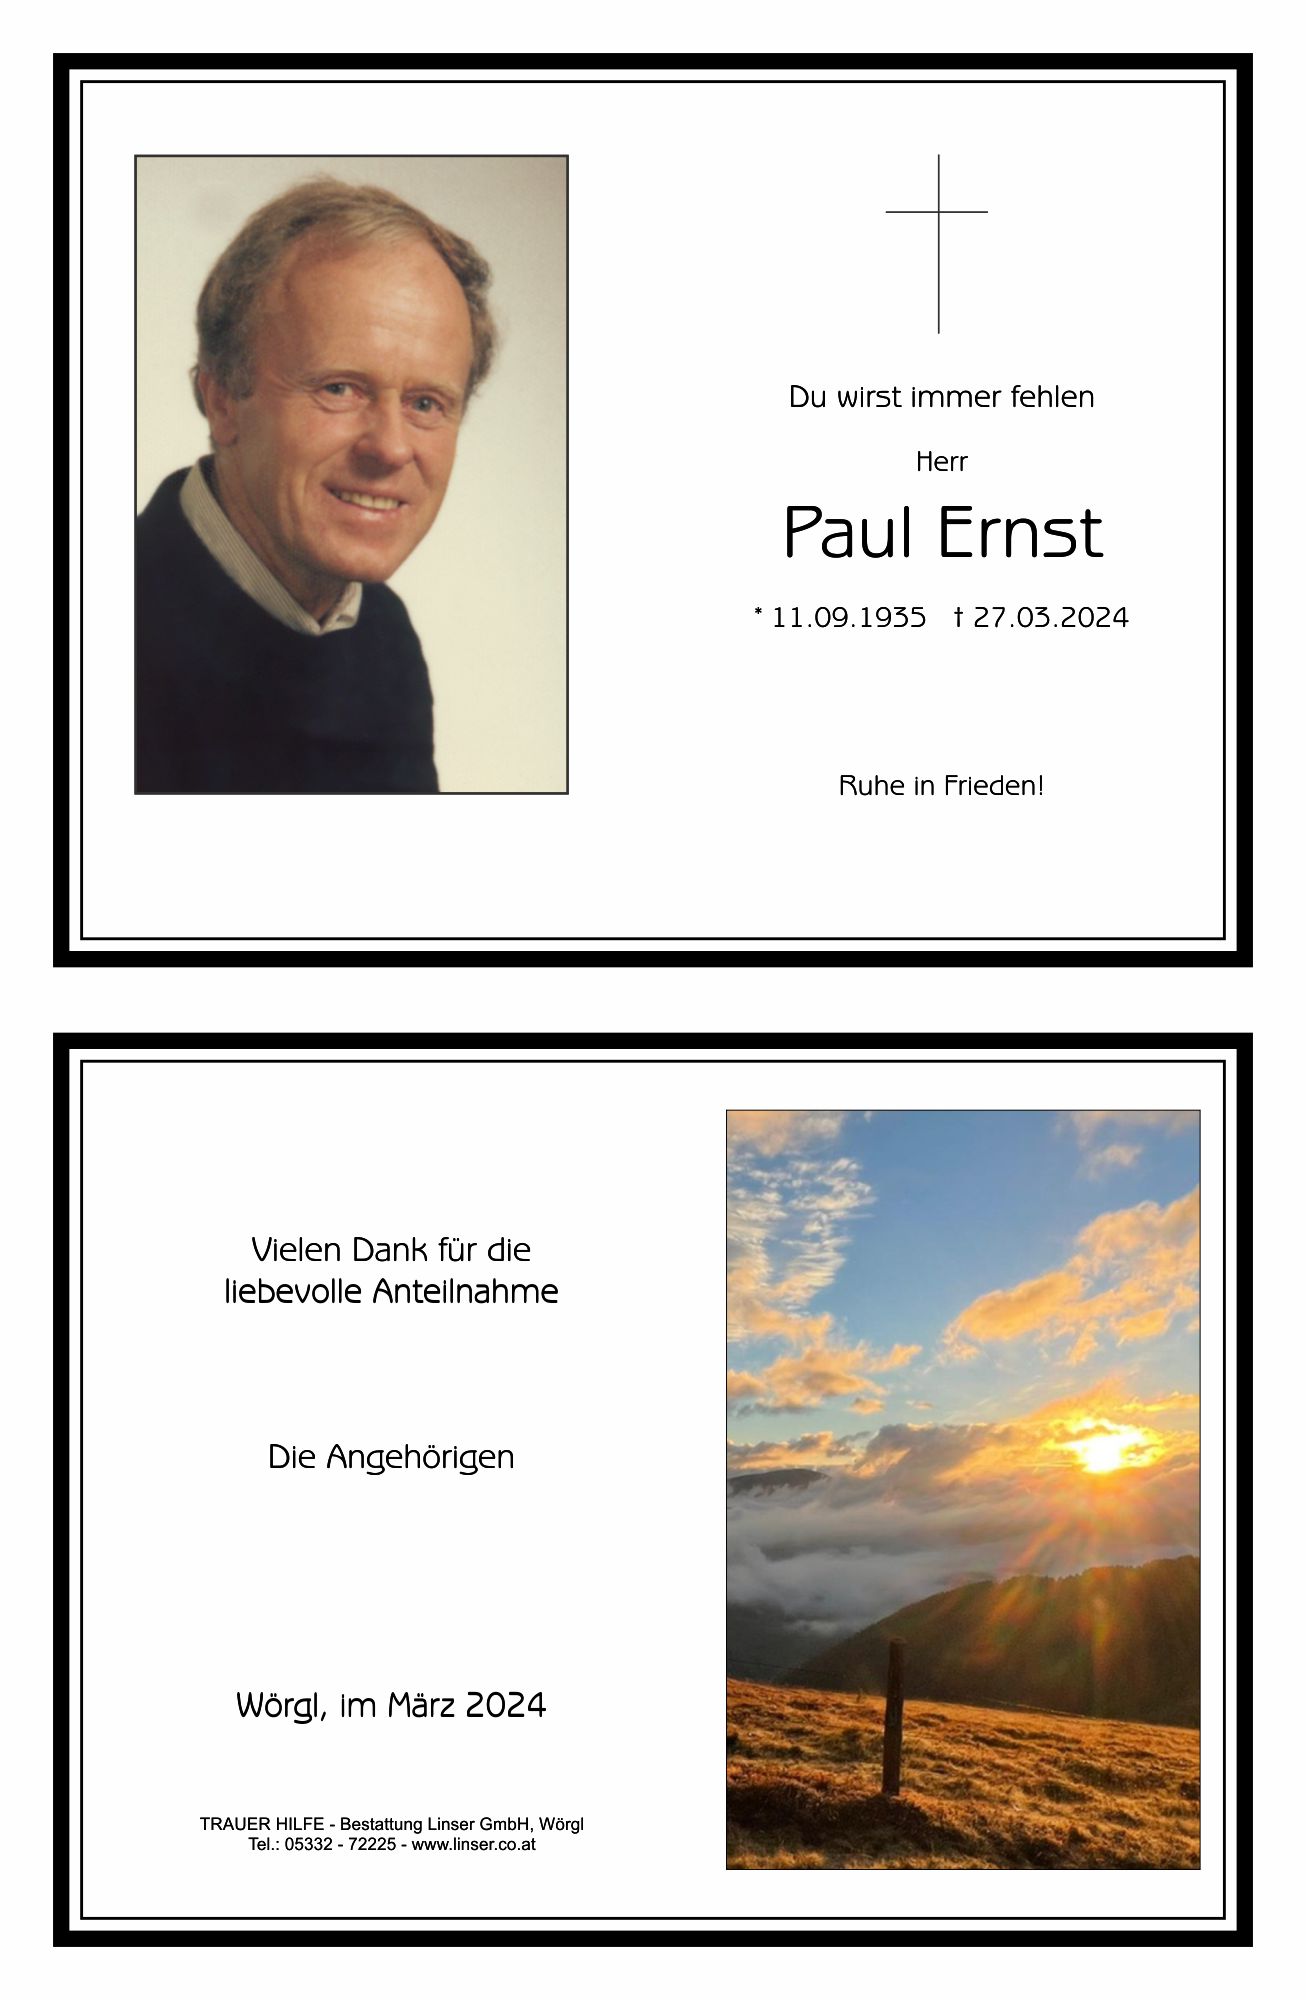 Paul Ernst